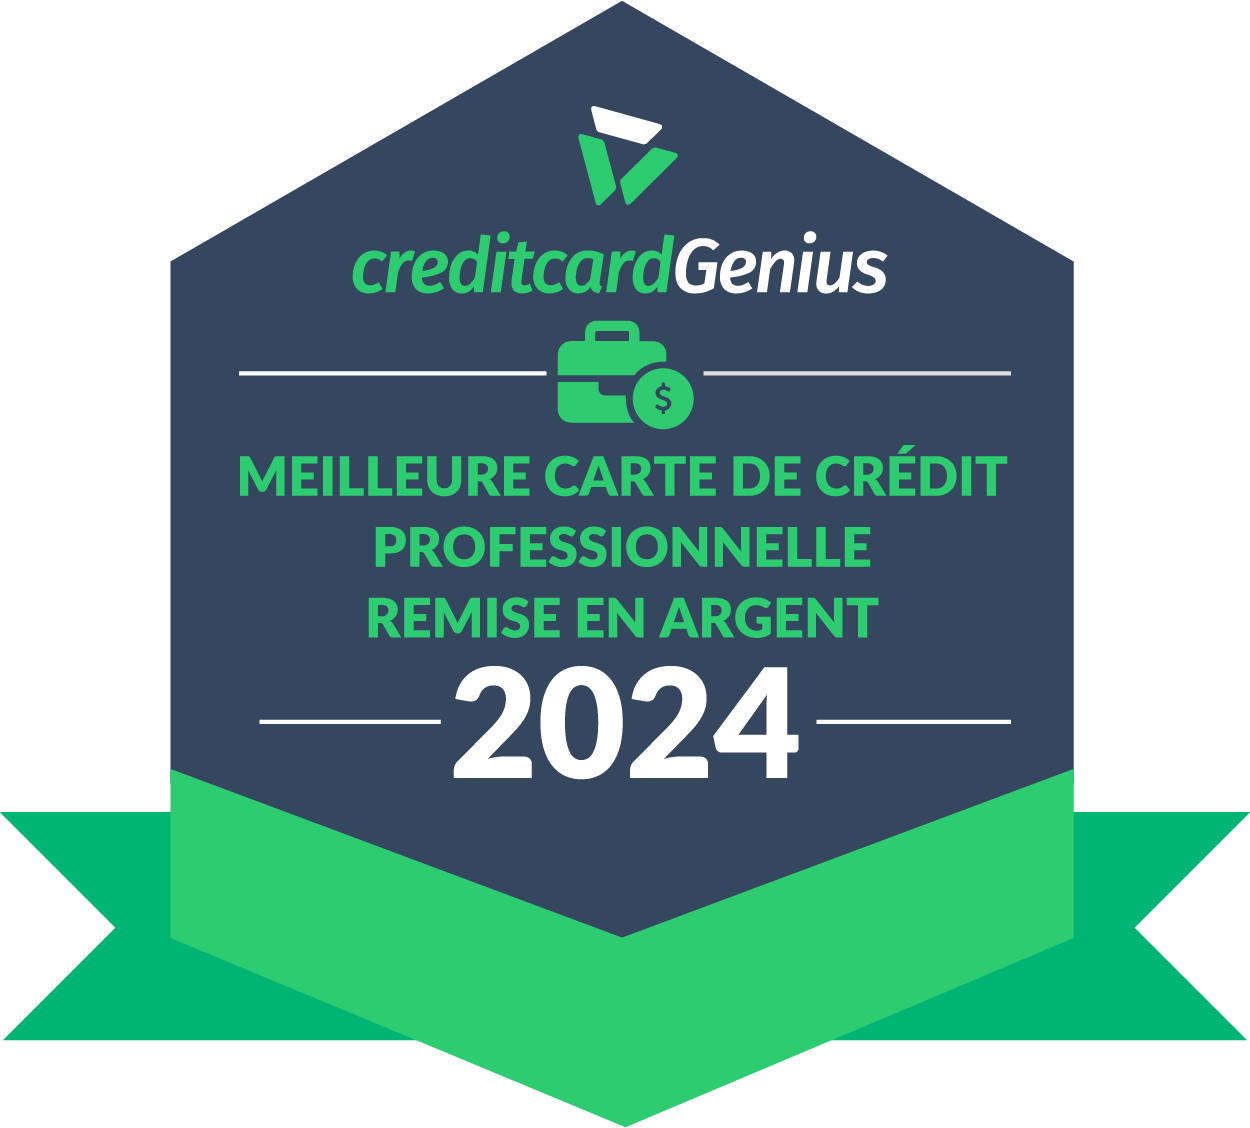 Logo de la meilleure carte de crédit professionelle remise en argent en 2024 de Credit Card Genius